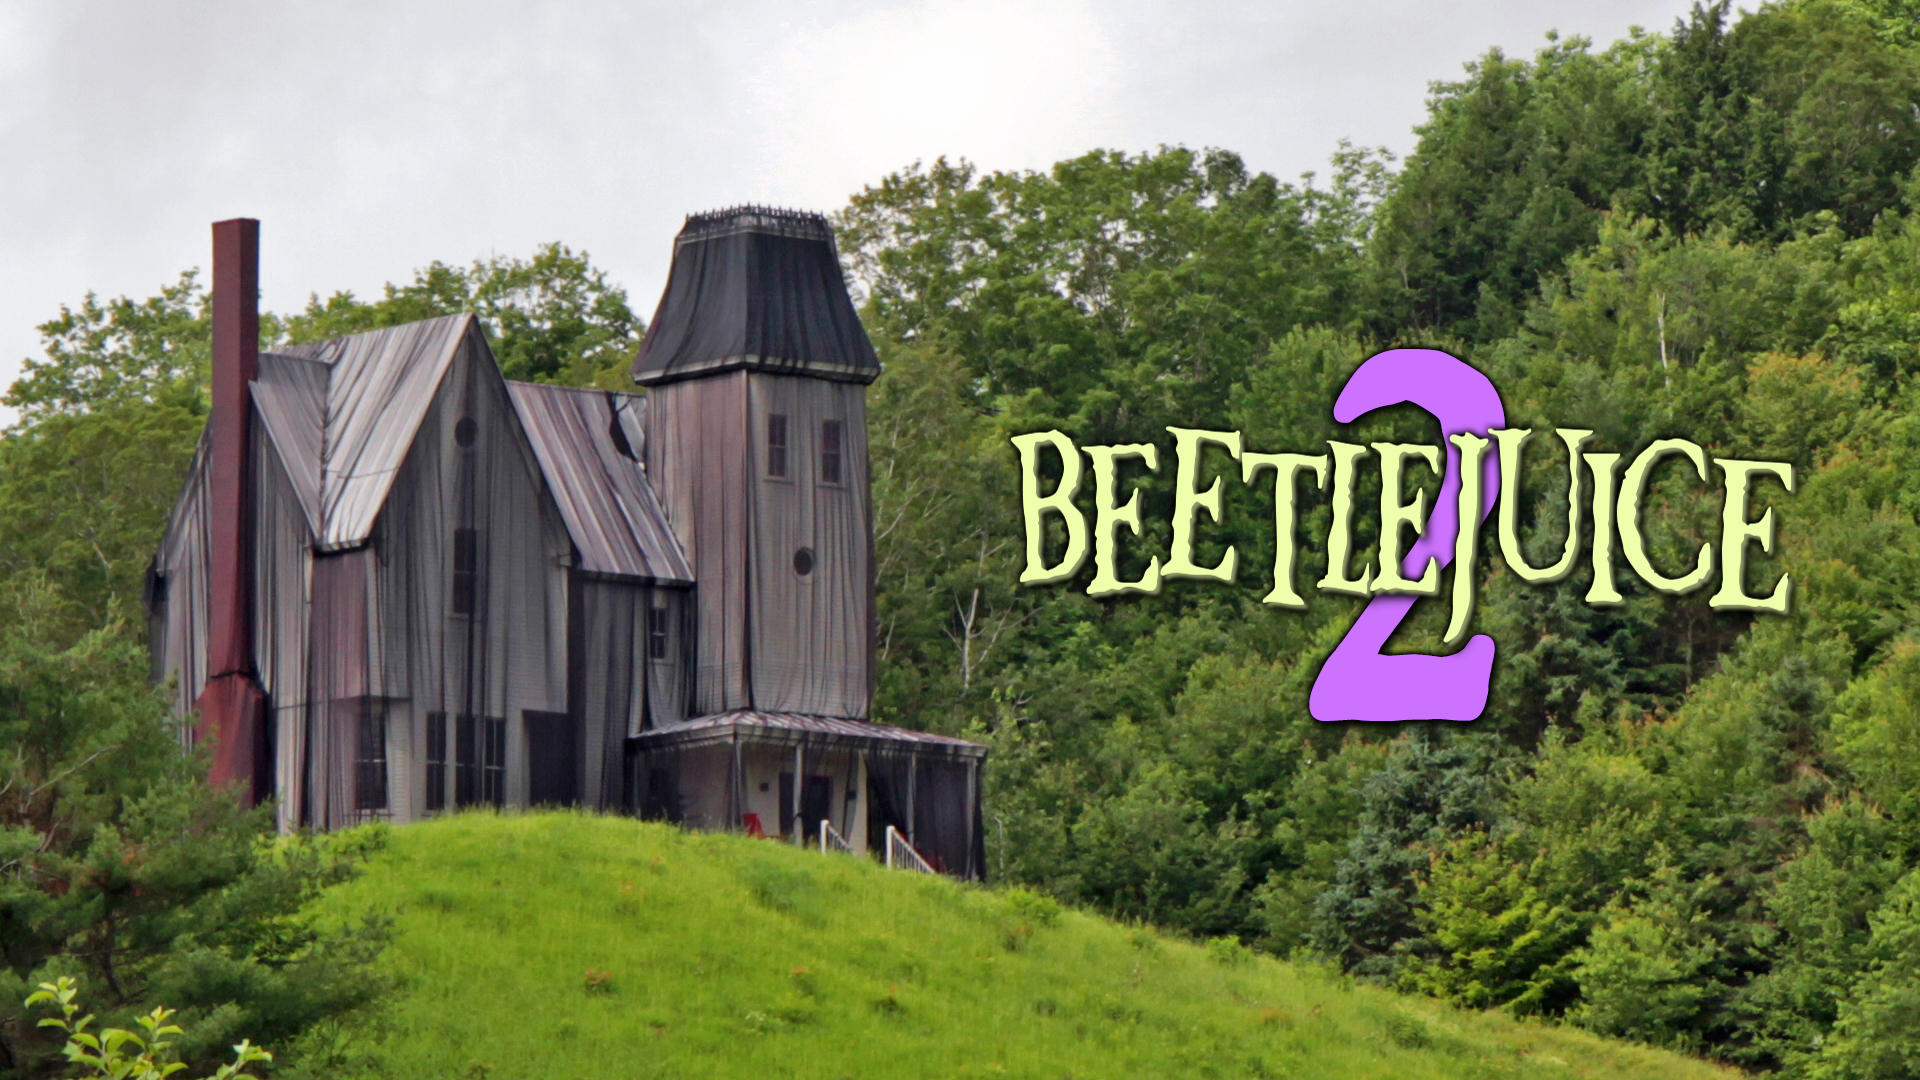 Beetlejuice 2 filming